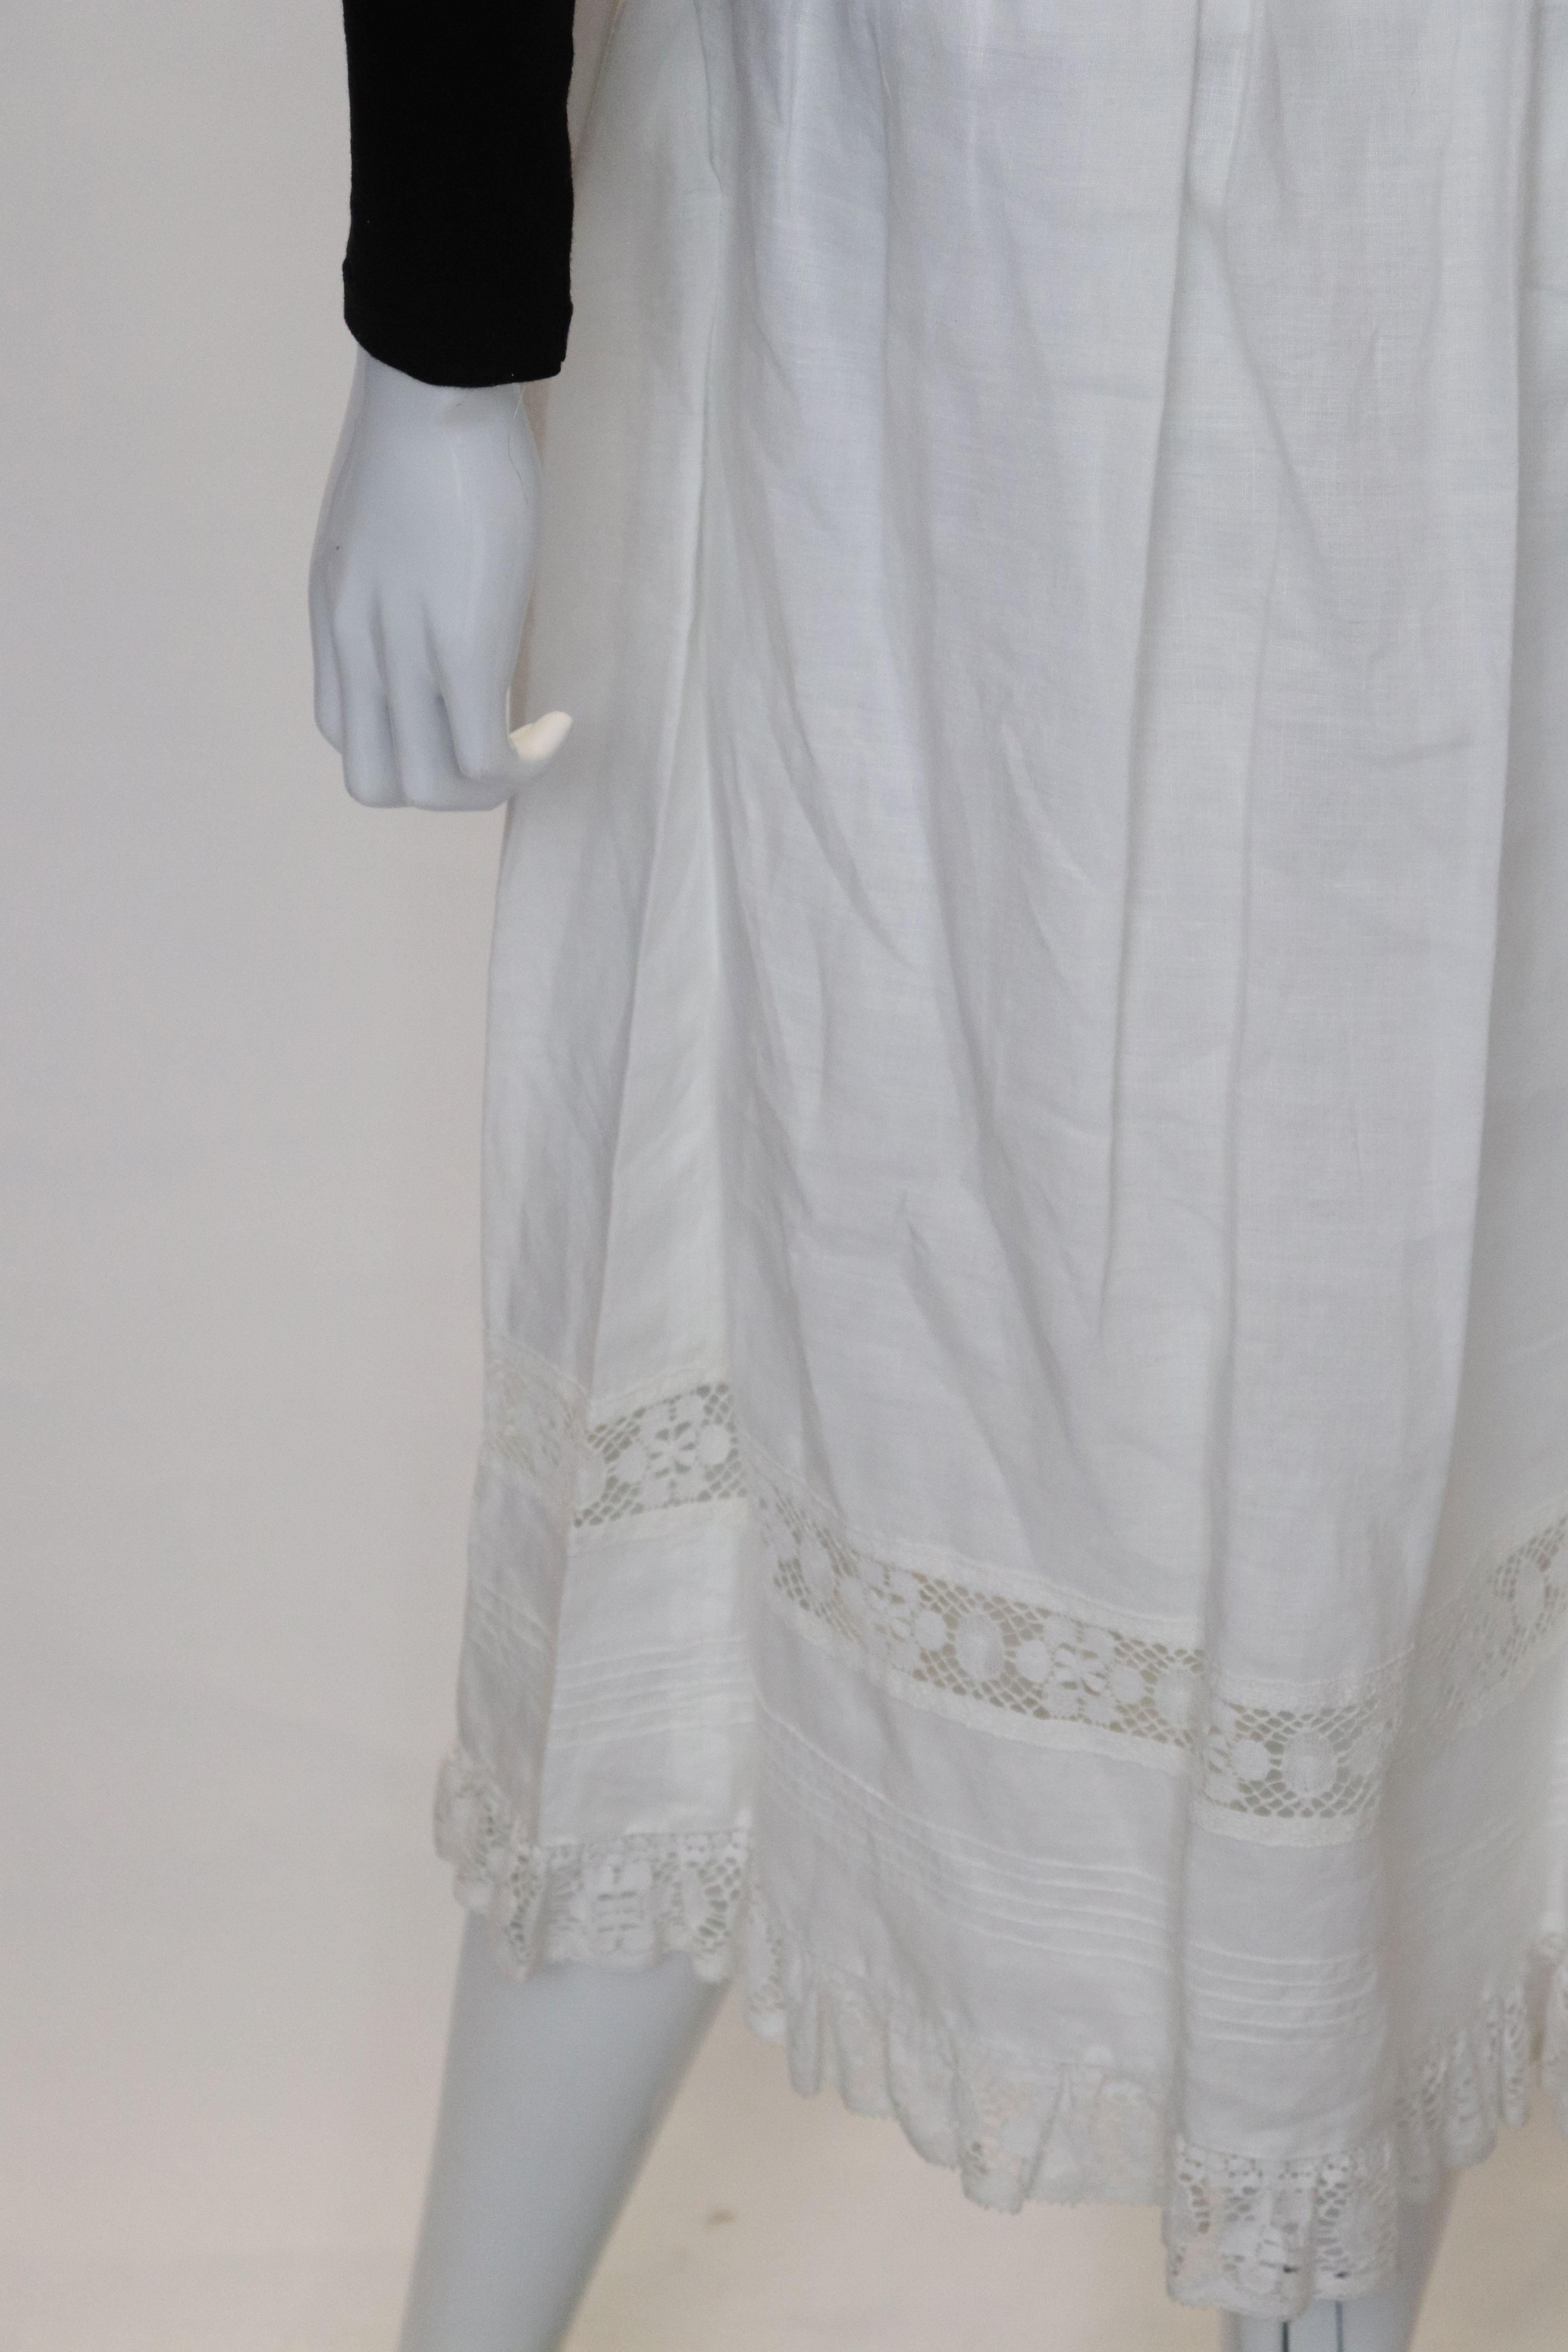 Women's Vintage CottonSkirt by John Radaelli For Sale